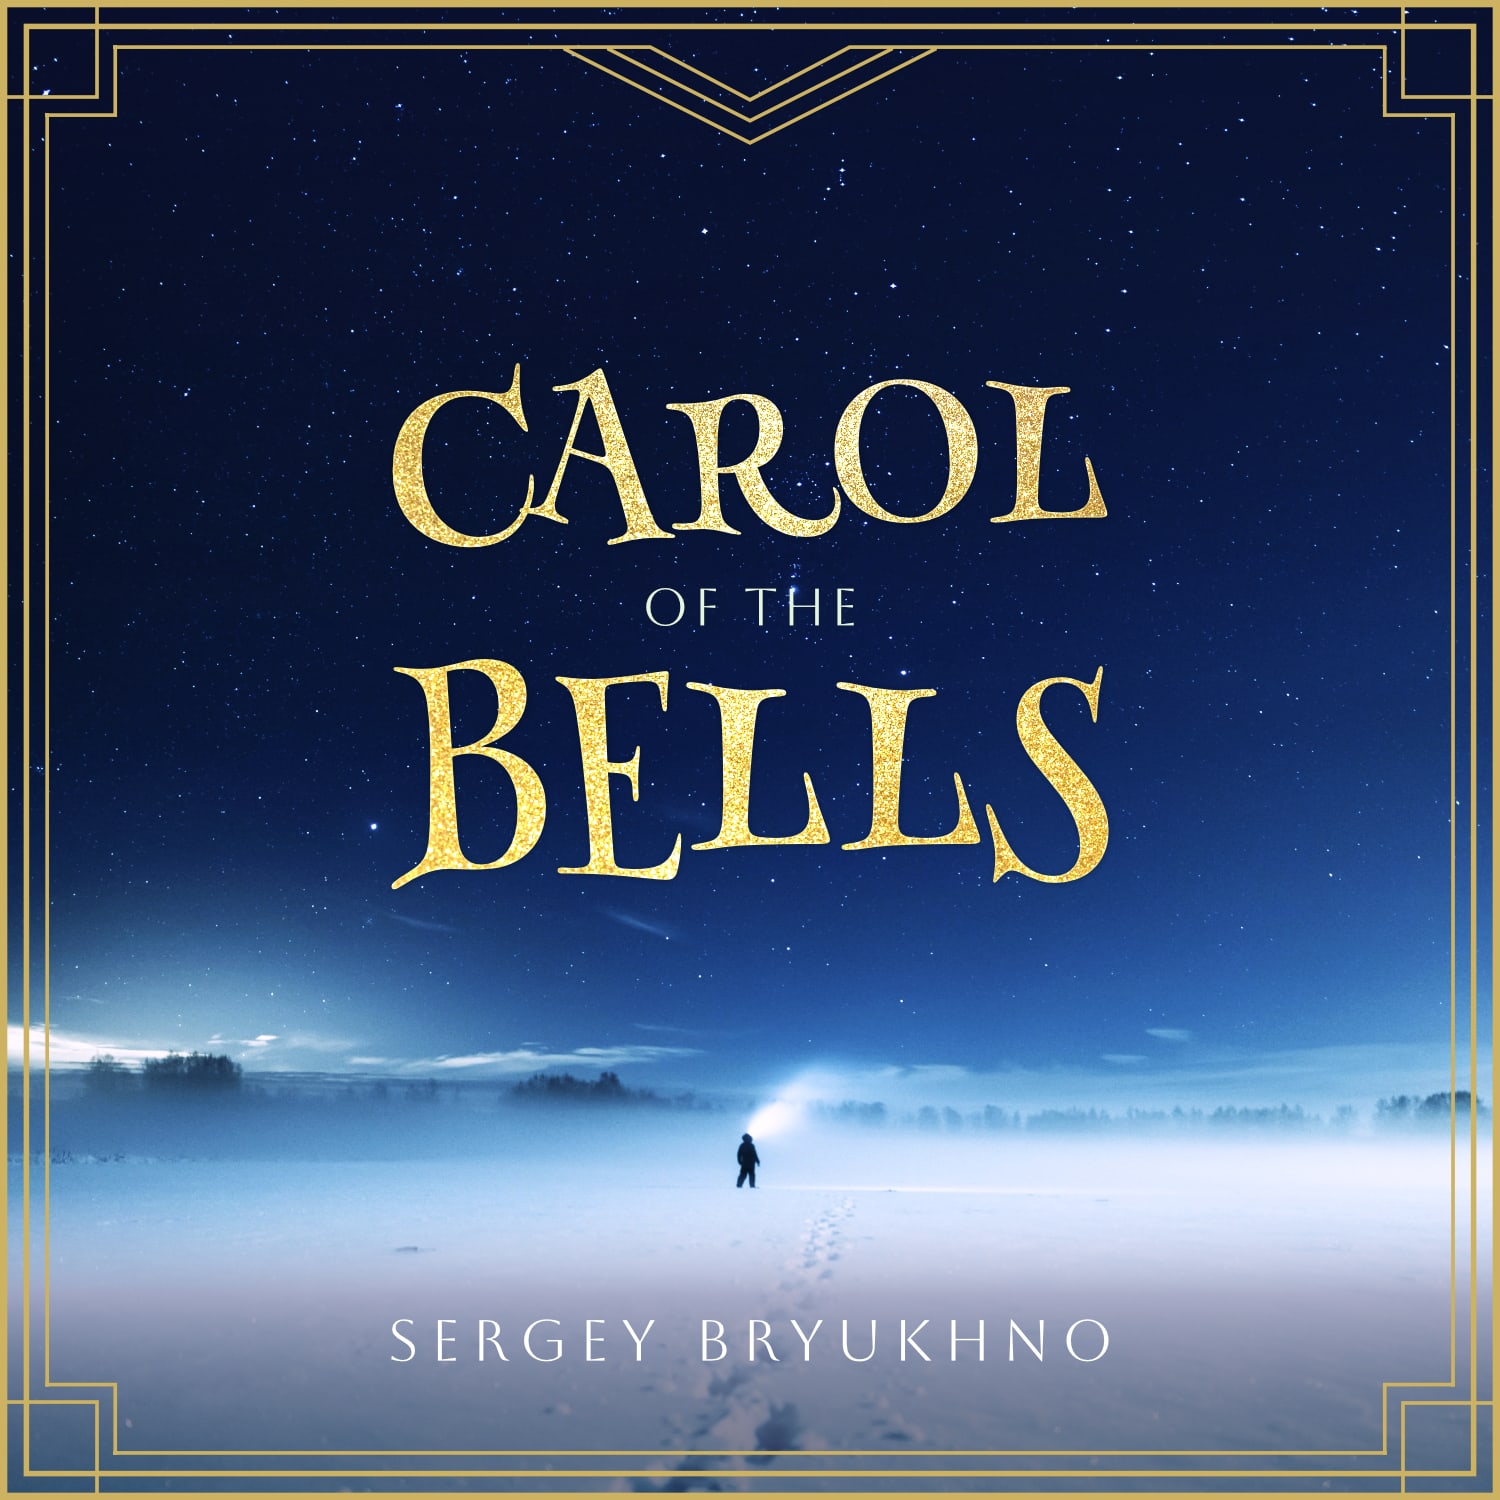 Carol of the Bells (Transcr. for Orchestra by Sergey Bryukhno)